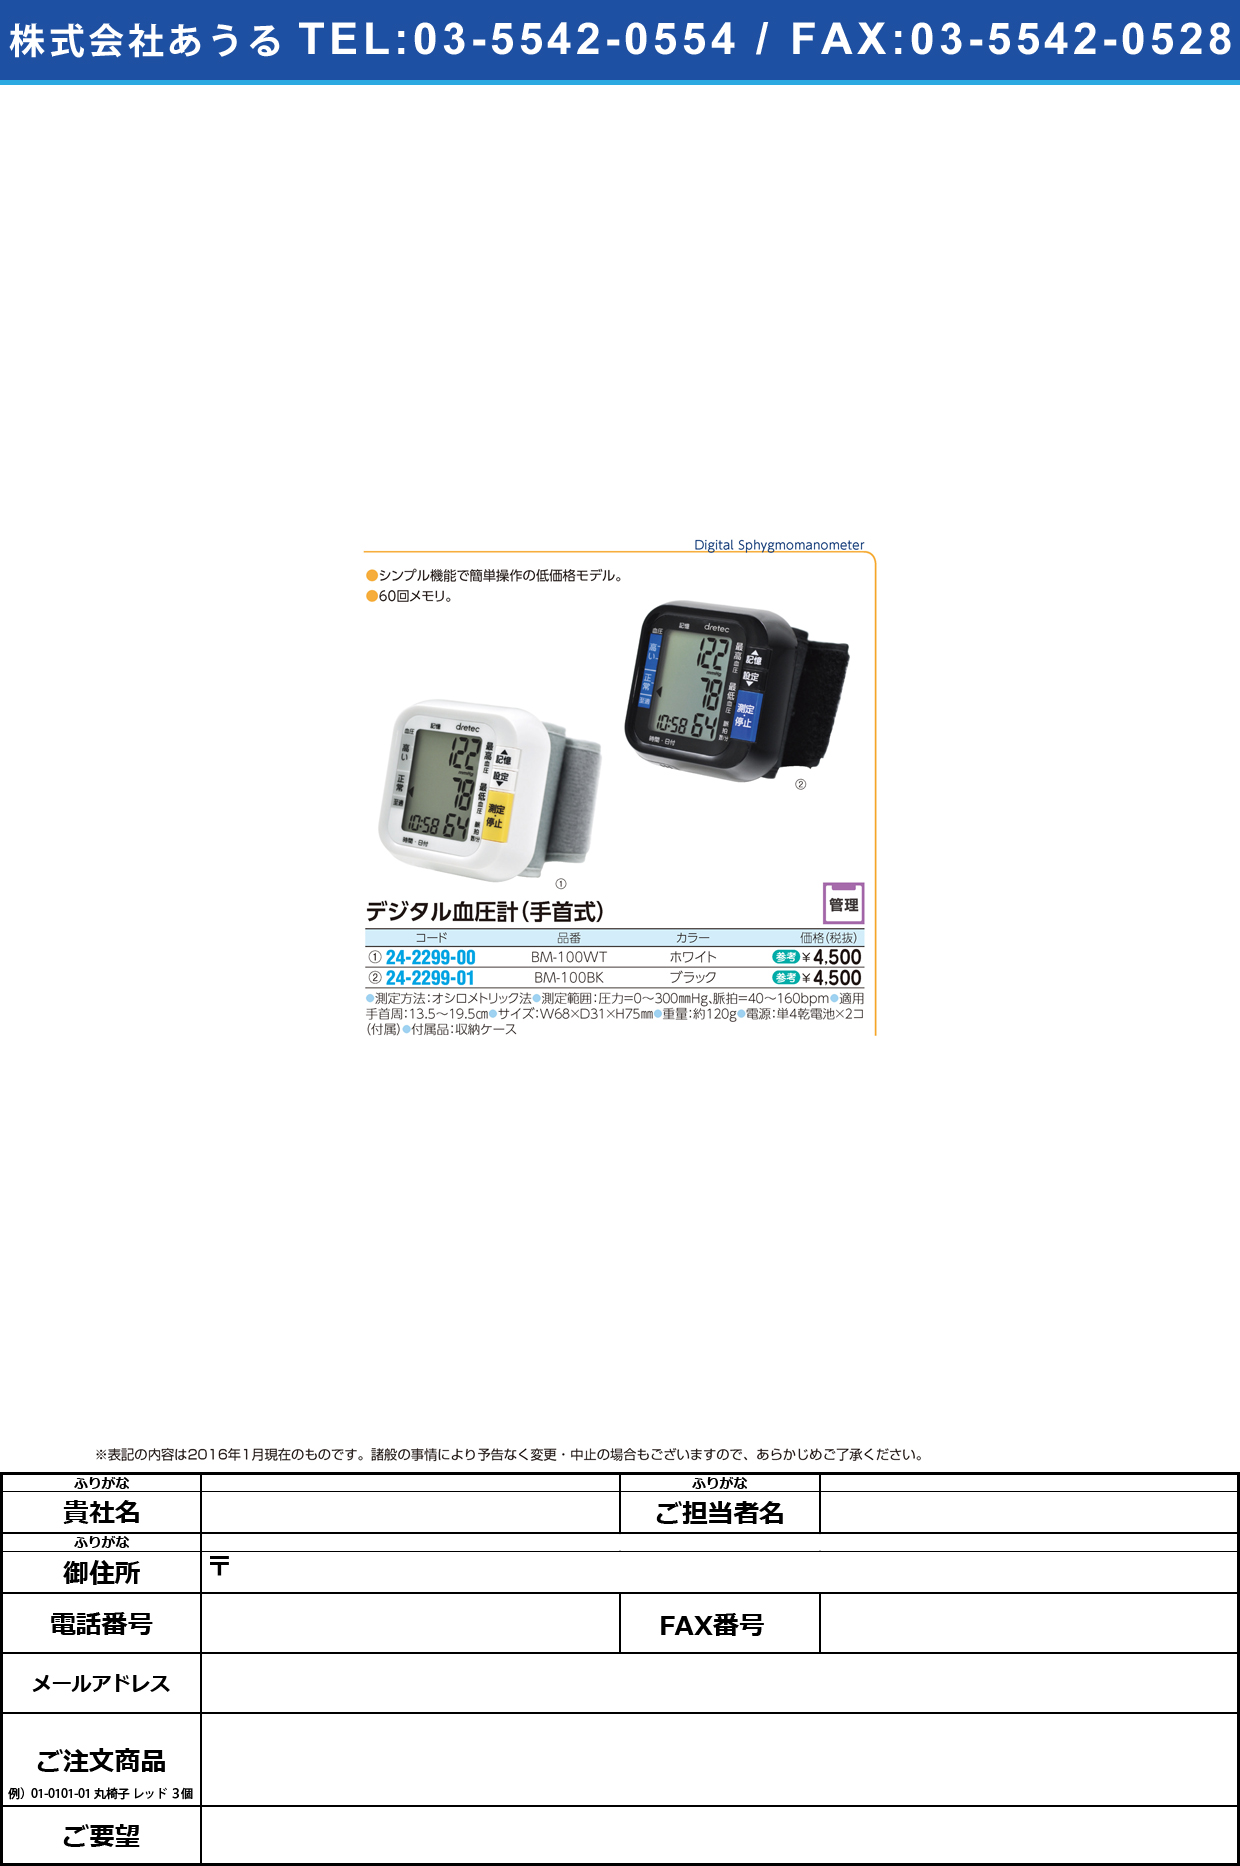 (24-2299-00)手首式血圧計 ﾃｸﾋﾞｼｷｹﾂｱﾂｹｲ BM-100WT(ﾎﾜｲﾄ)【1台単位】【2016年カタログ商品】